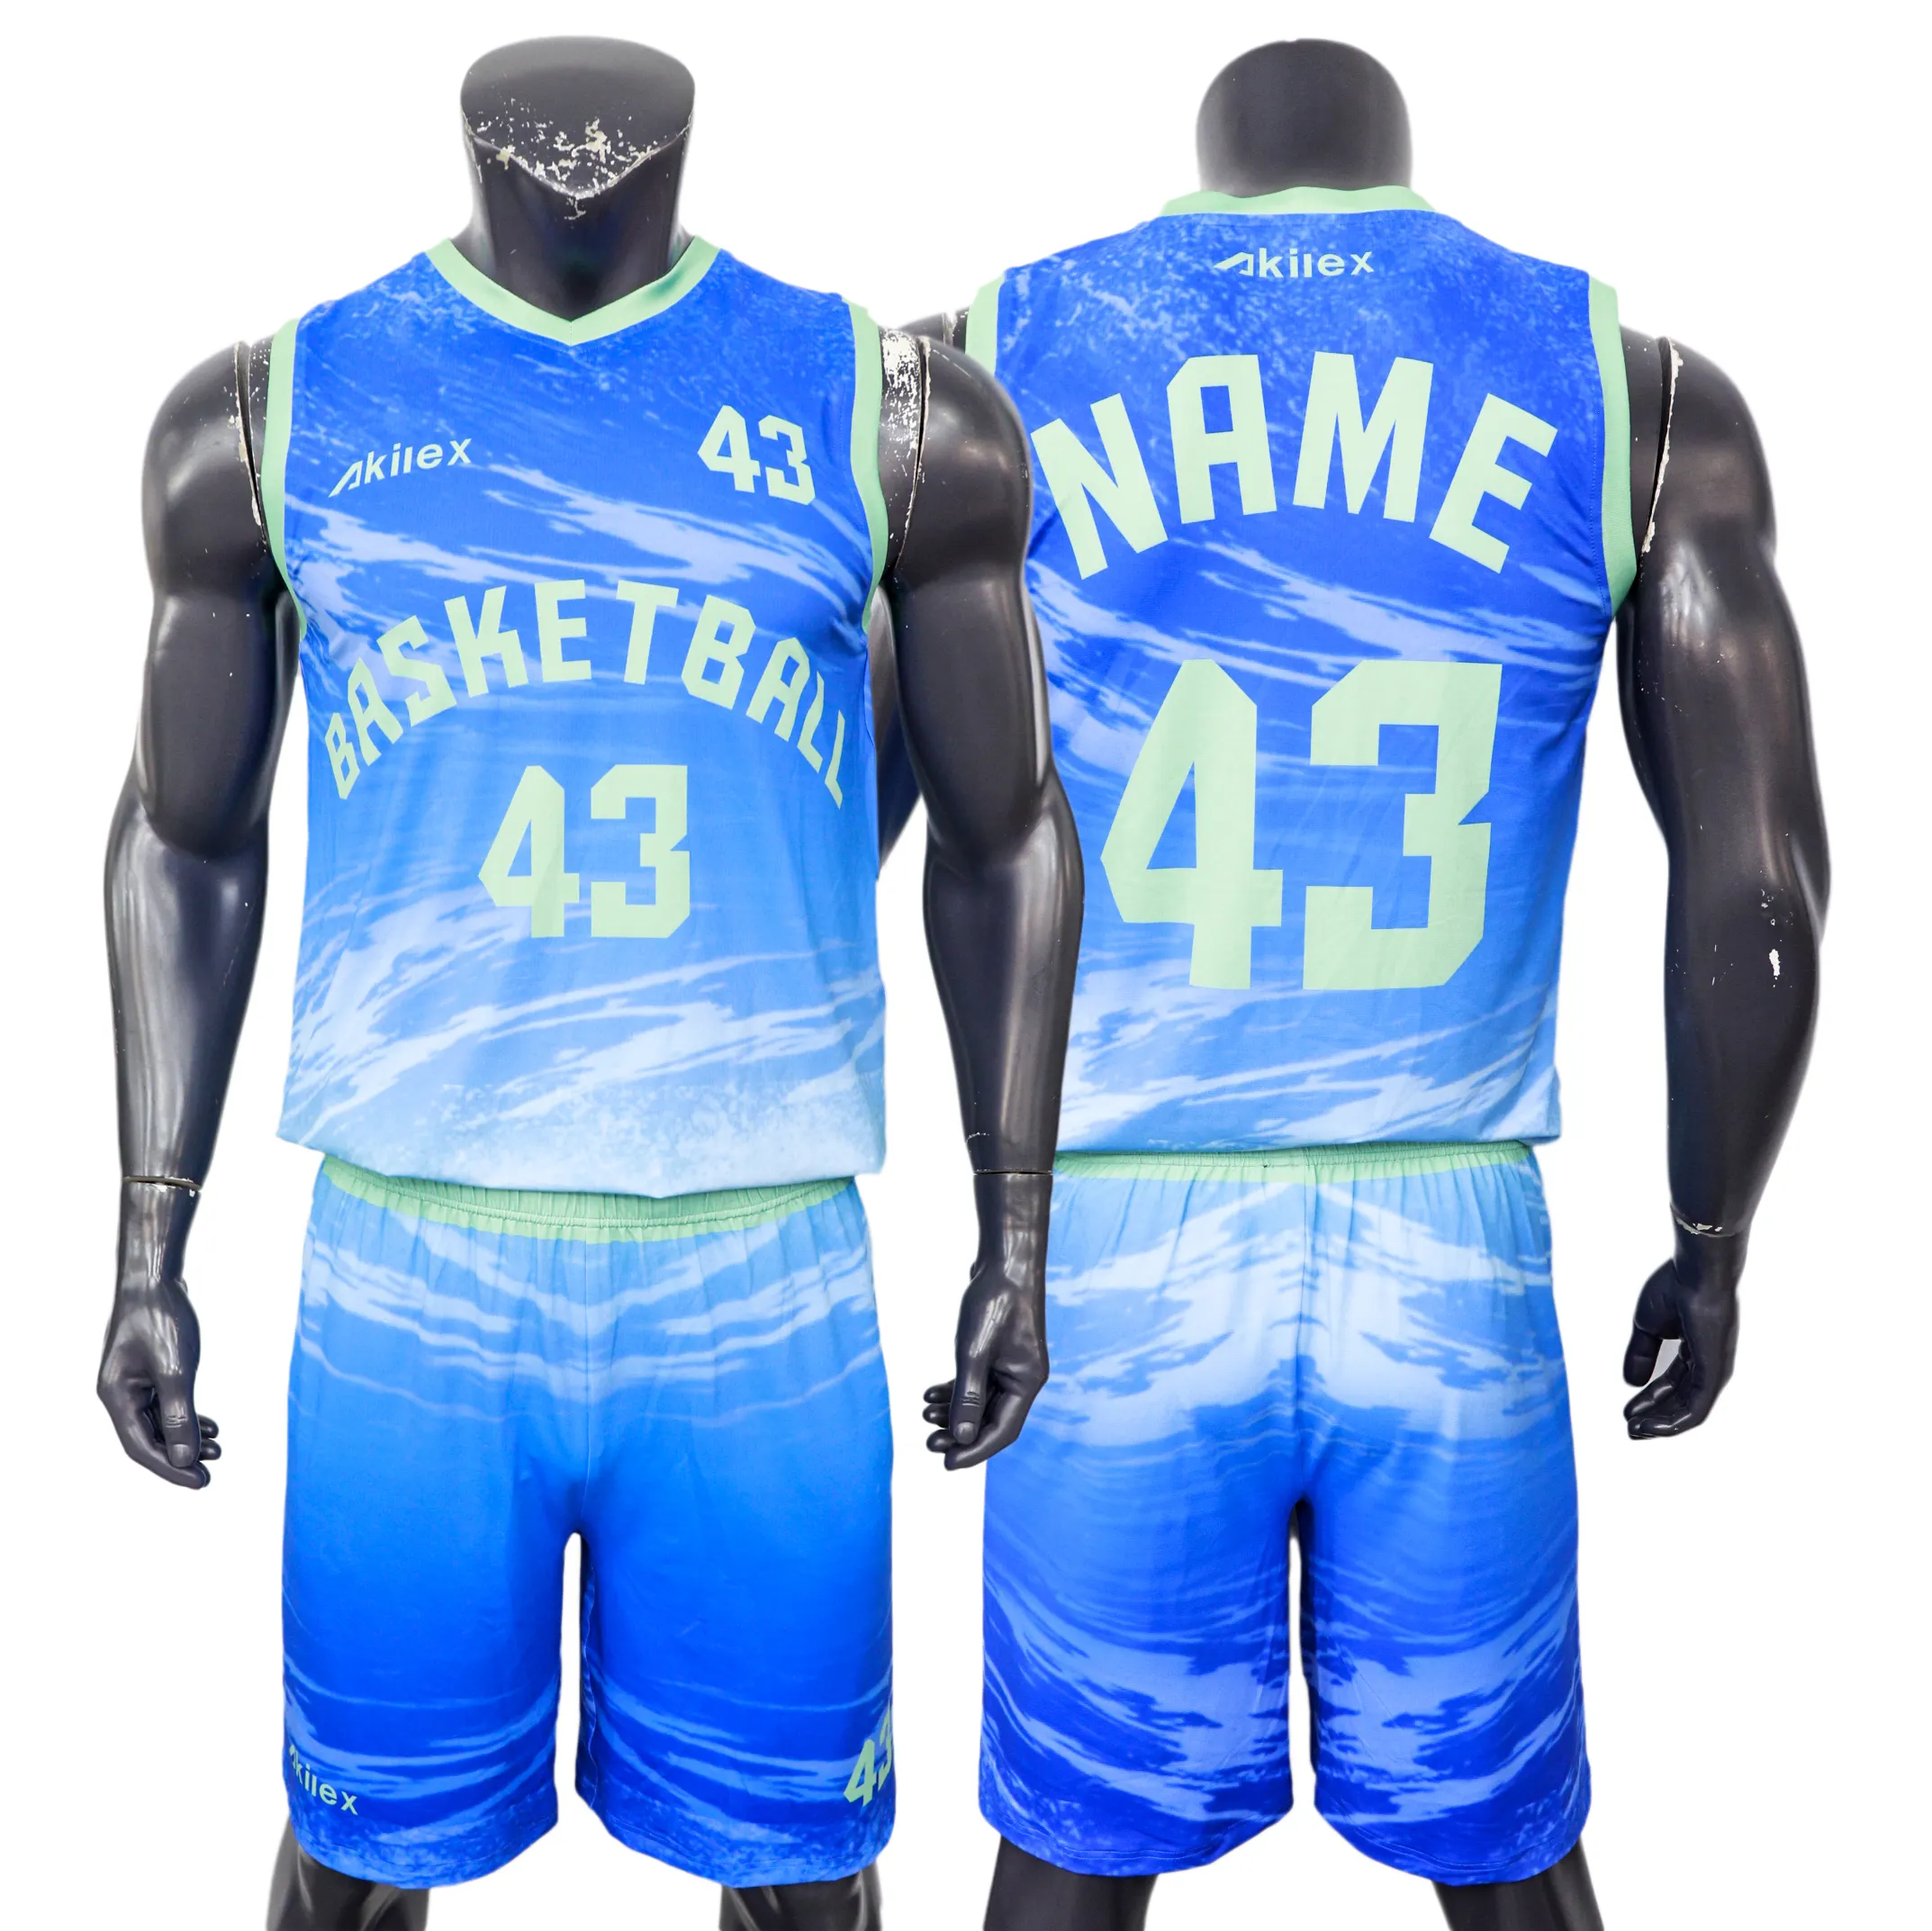 Dernier nouveau design sur mesure uniformes de joueurs de basket-ball respirants en vente de gros maillot de fitness costume de basket-ball